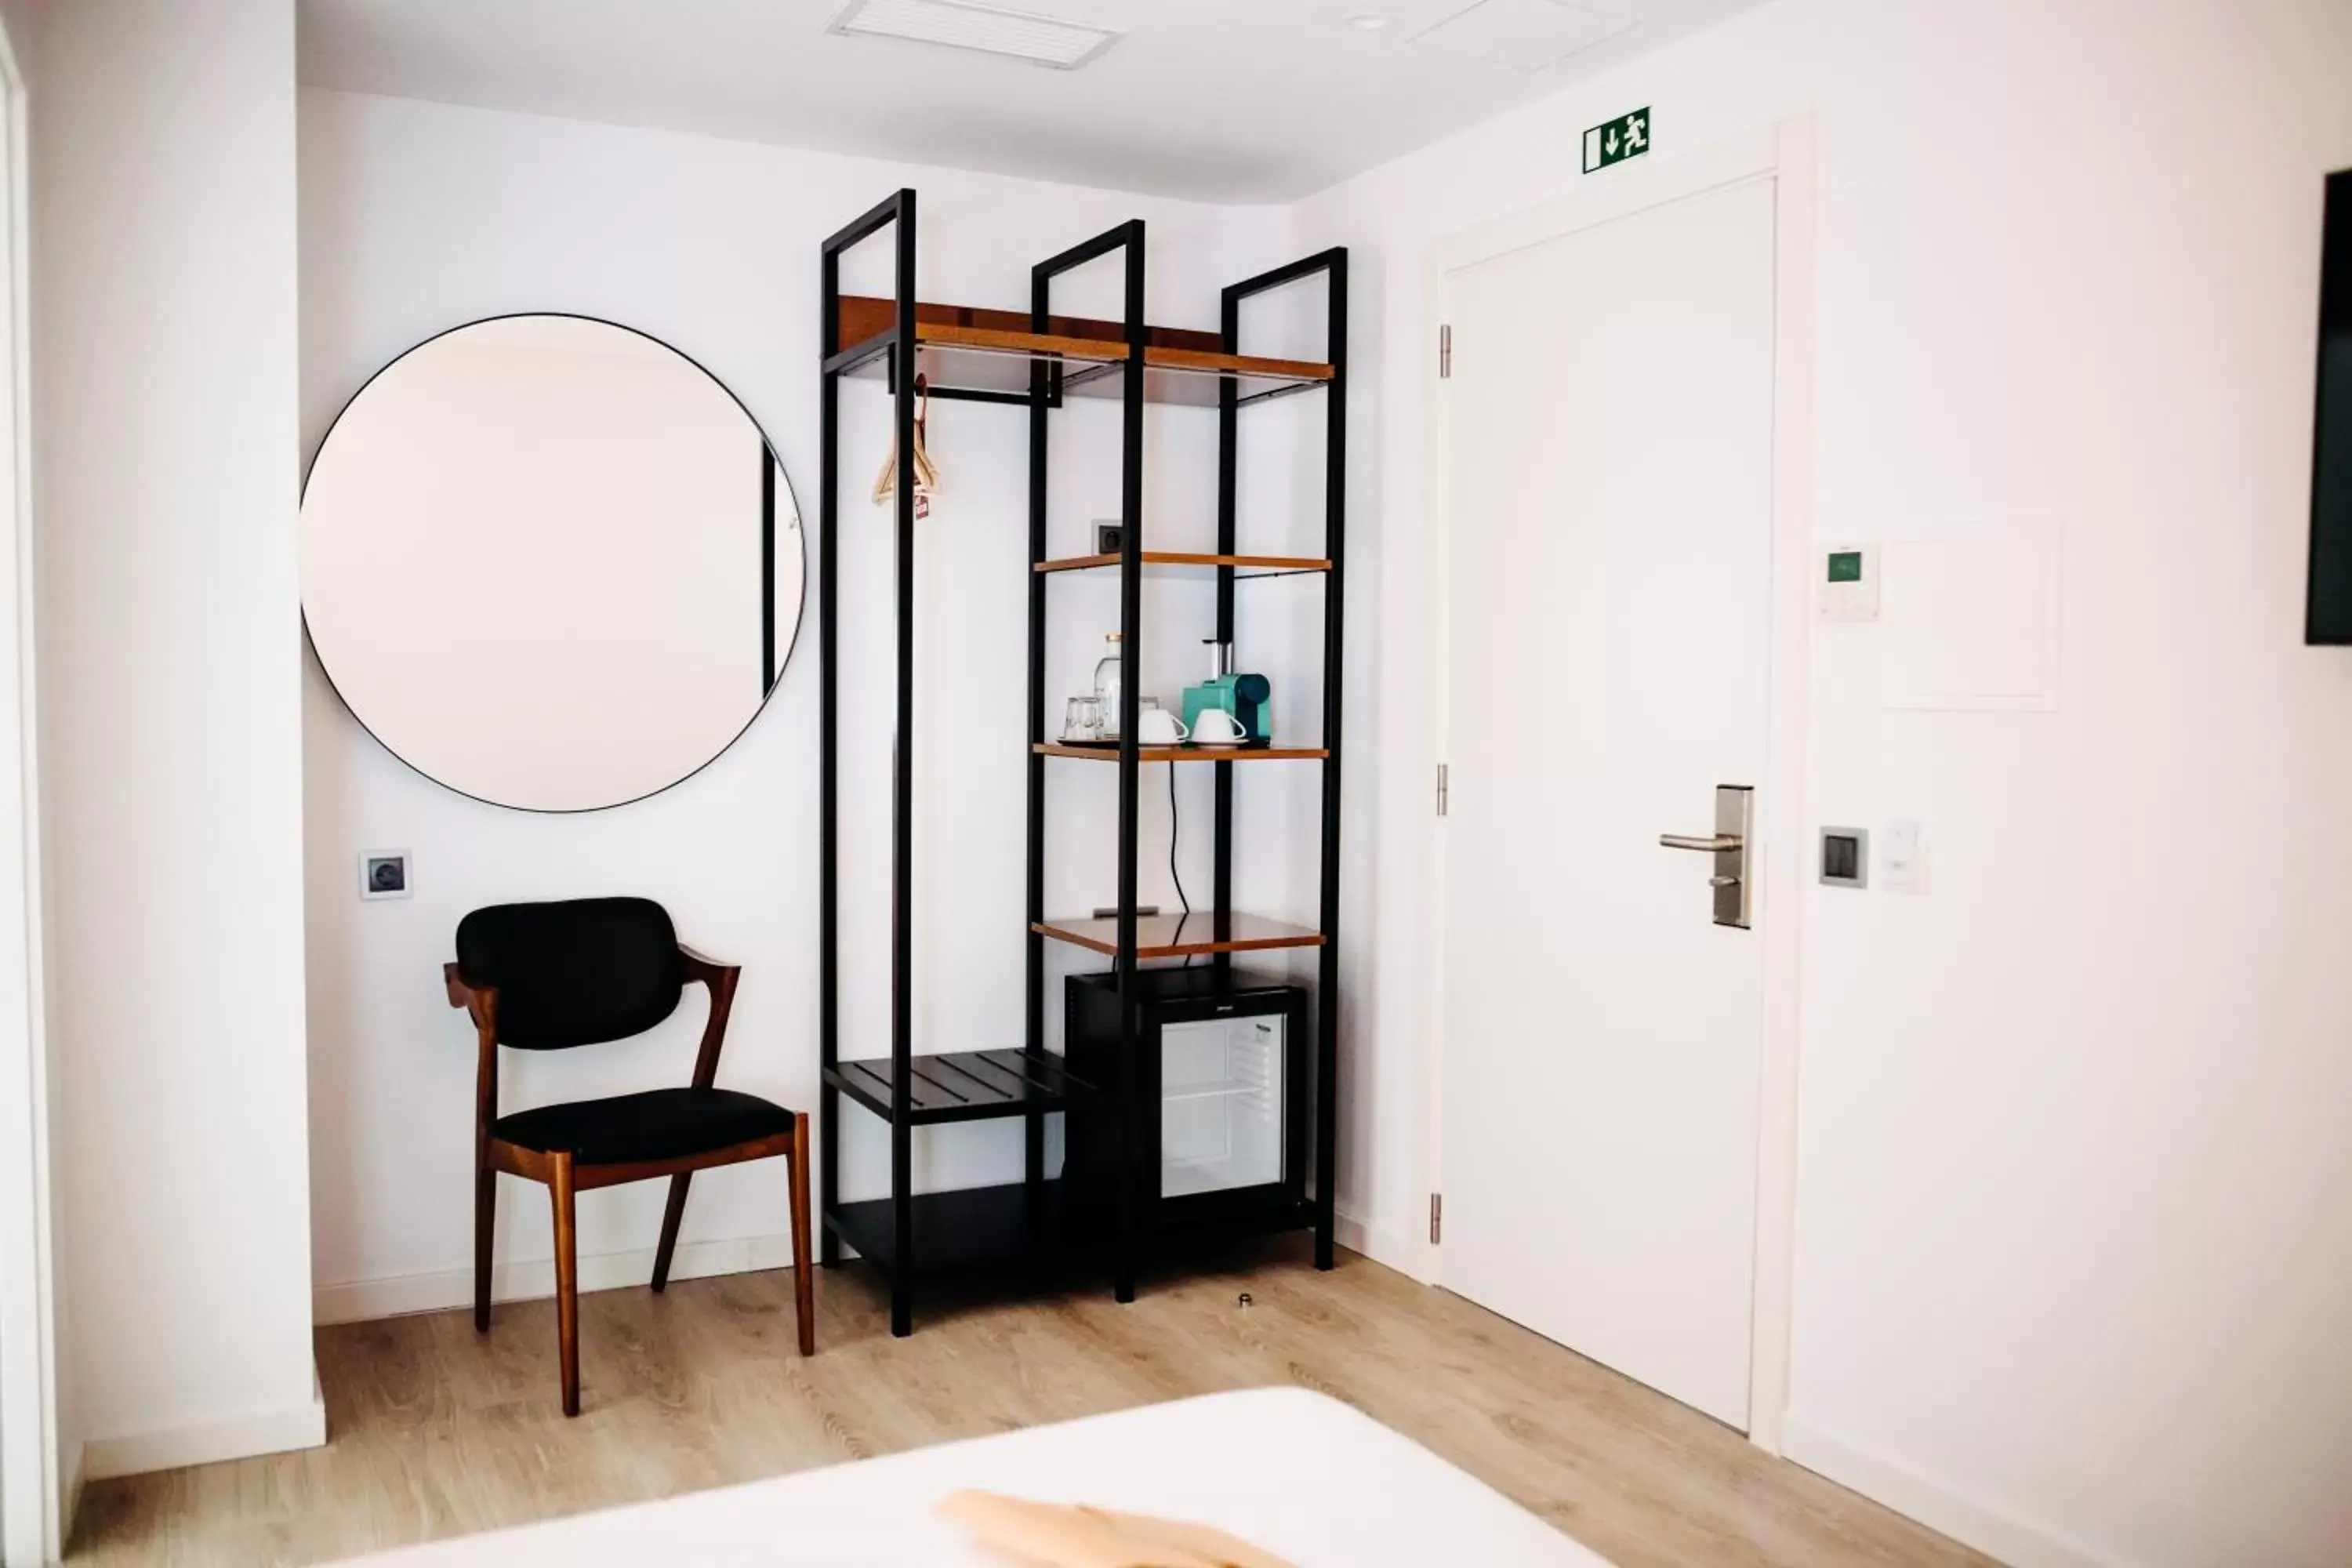 Bedroom, Bathroom in Next Level Premium Hotels